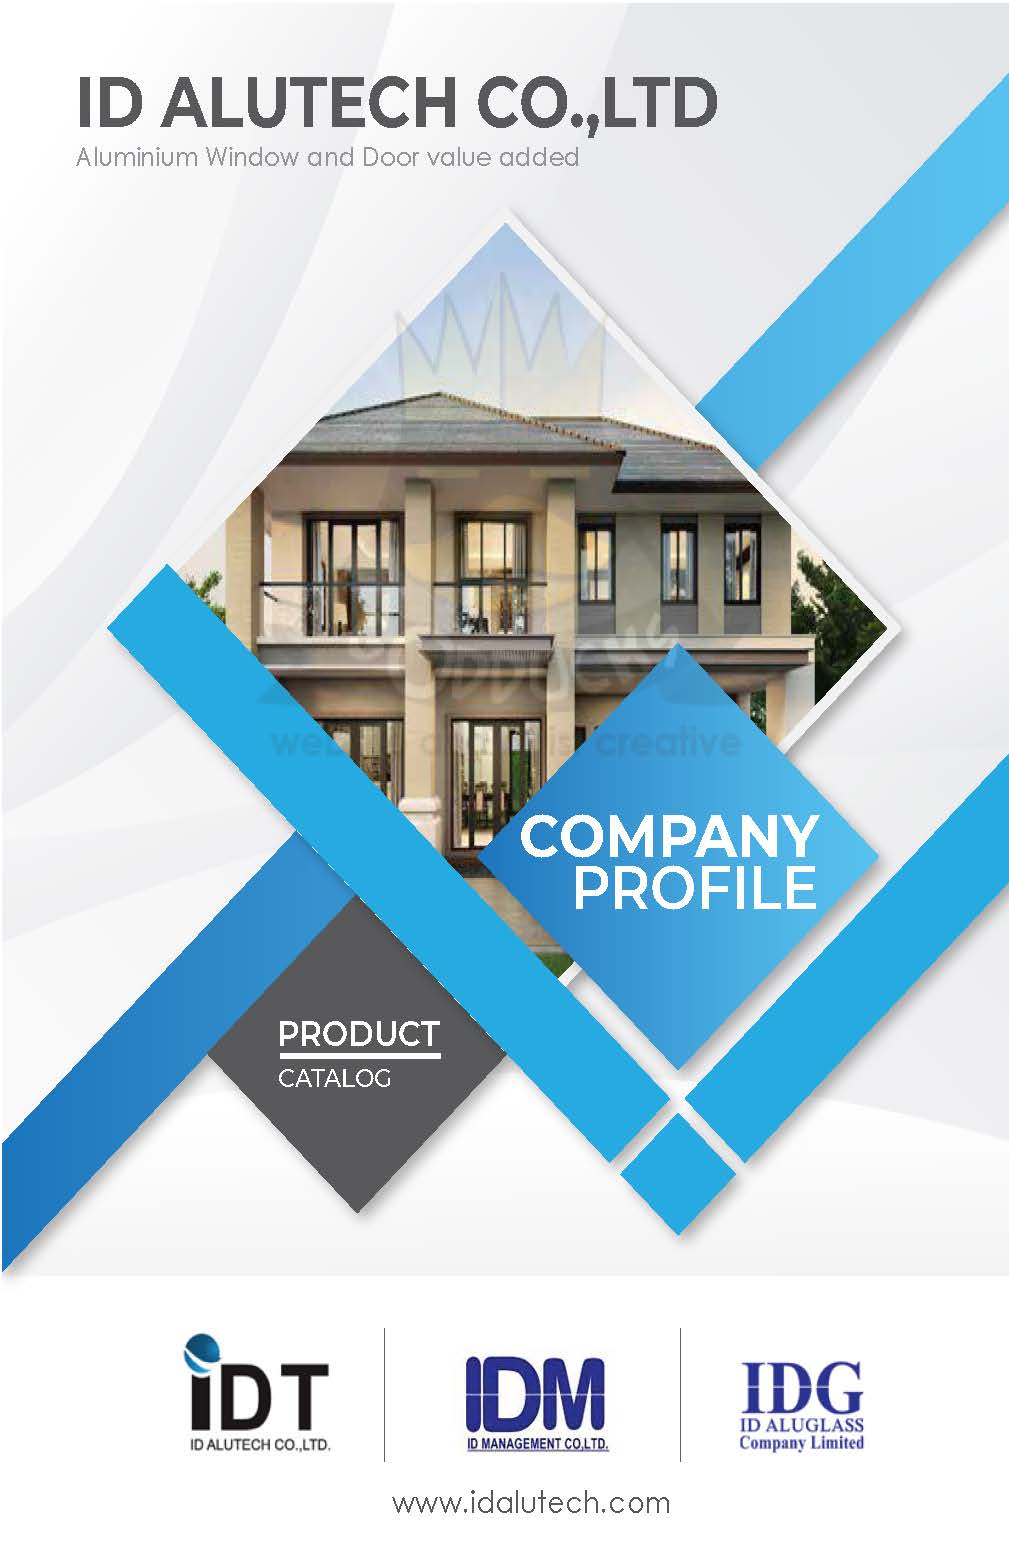 รับออกแบบ โปรไฟล์บริษัท โปรไฟล์ธุรกิจ (Company Profile) 